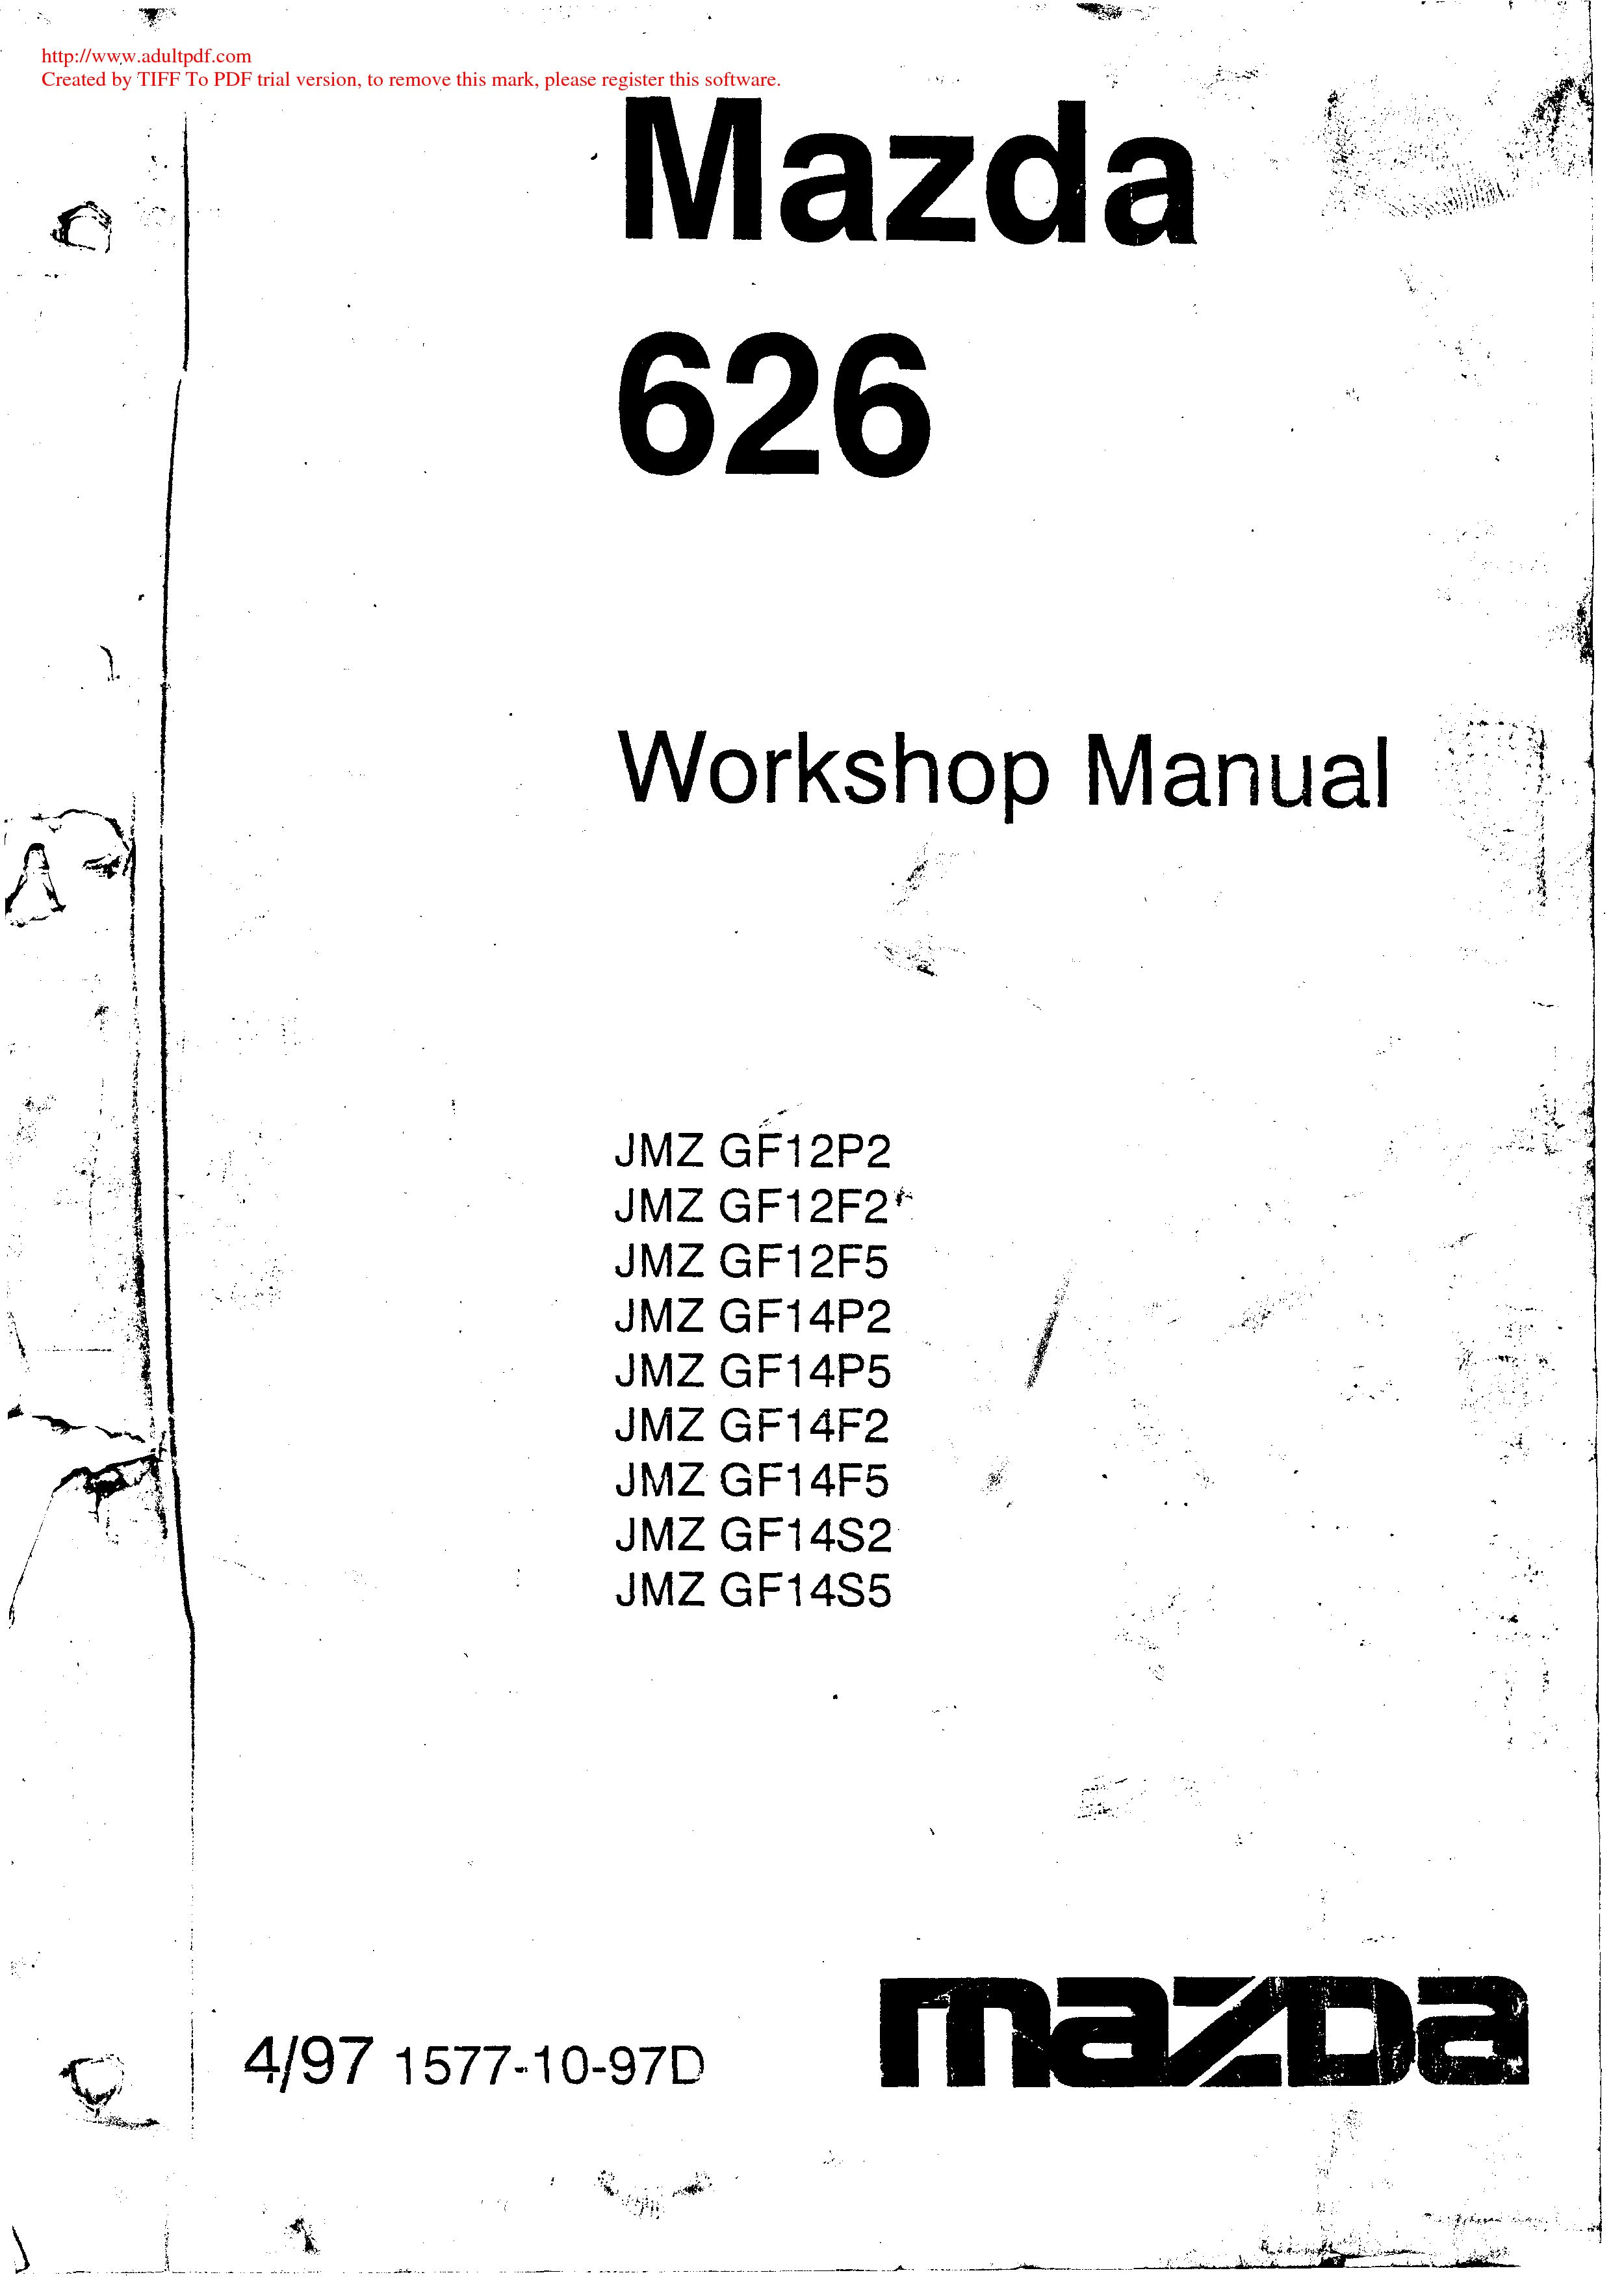 Mazda 626 Workshop Manual De Taller Pdf Mazda Mazda